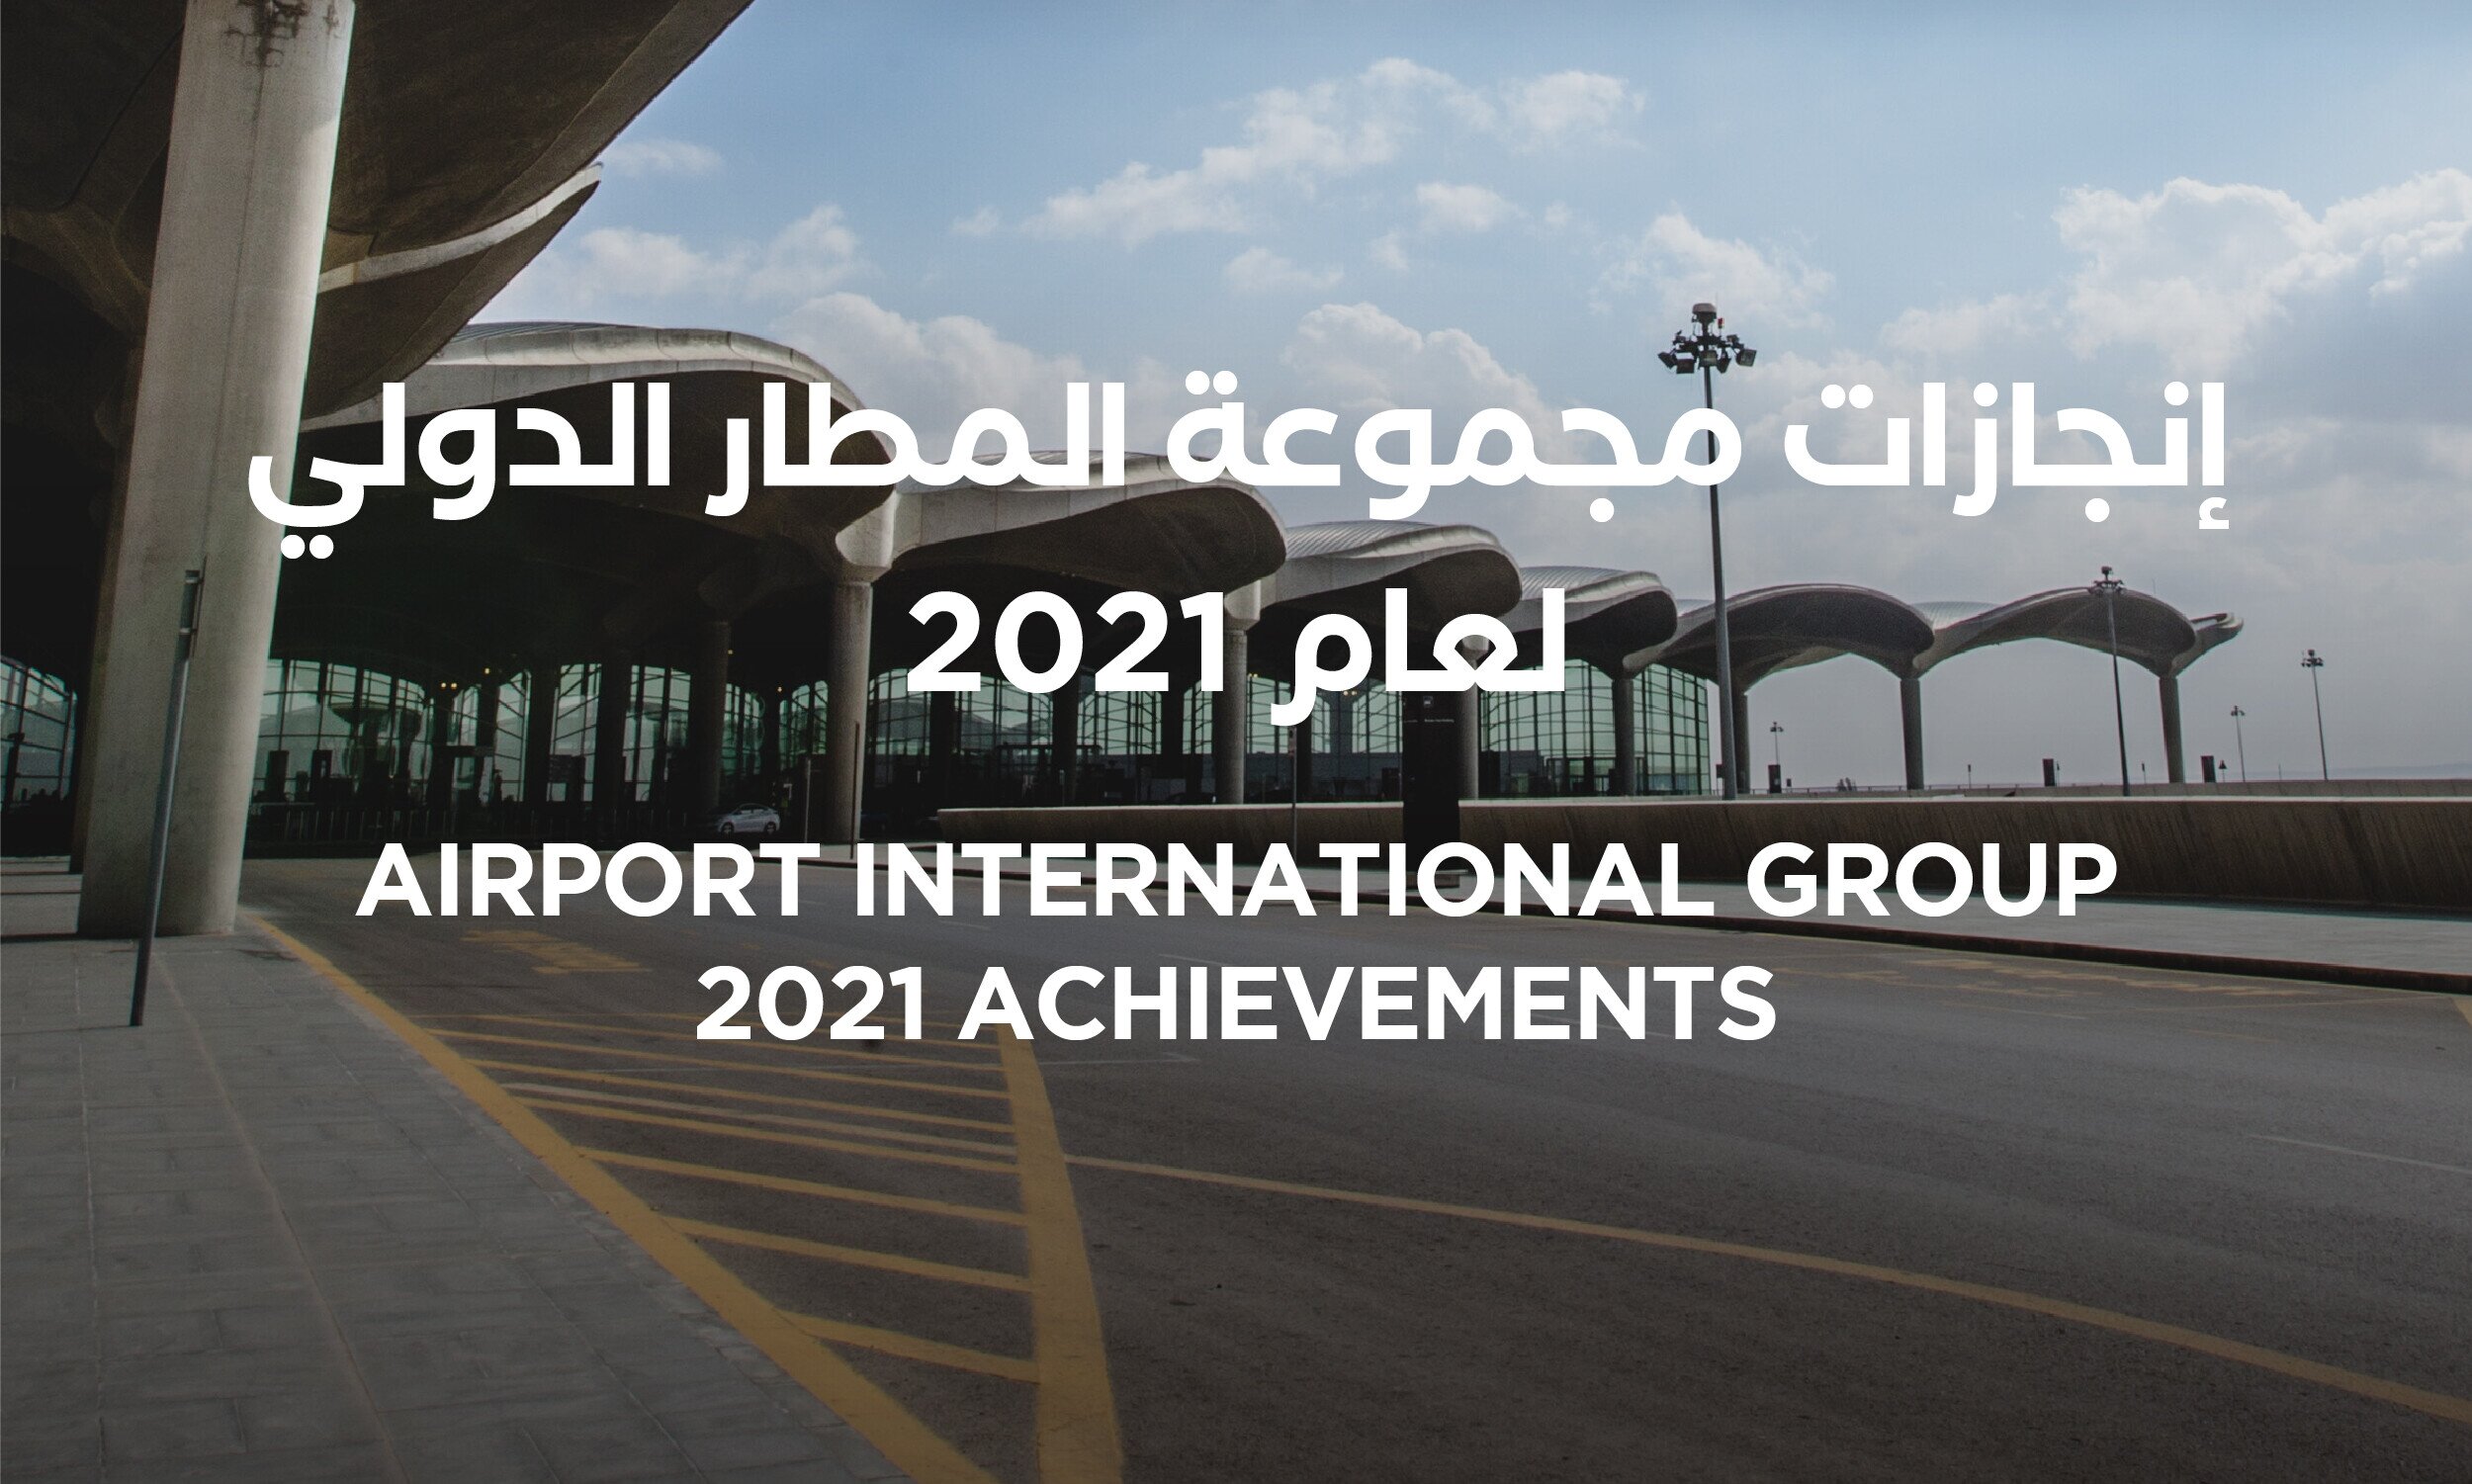 Airport International Group Announces 2021 Achievements